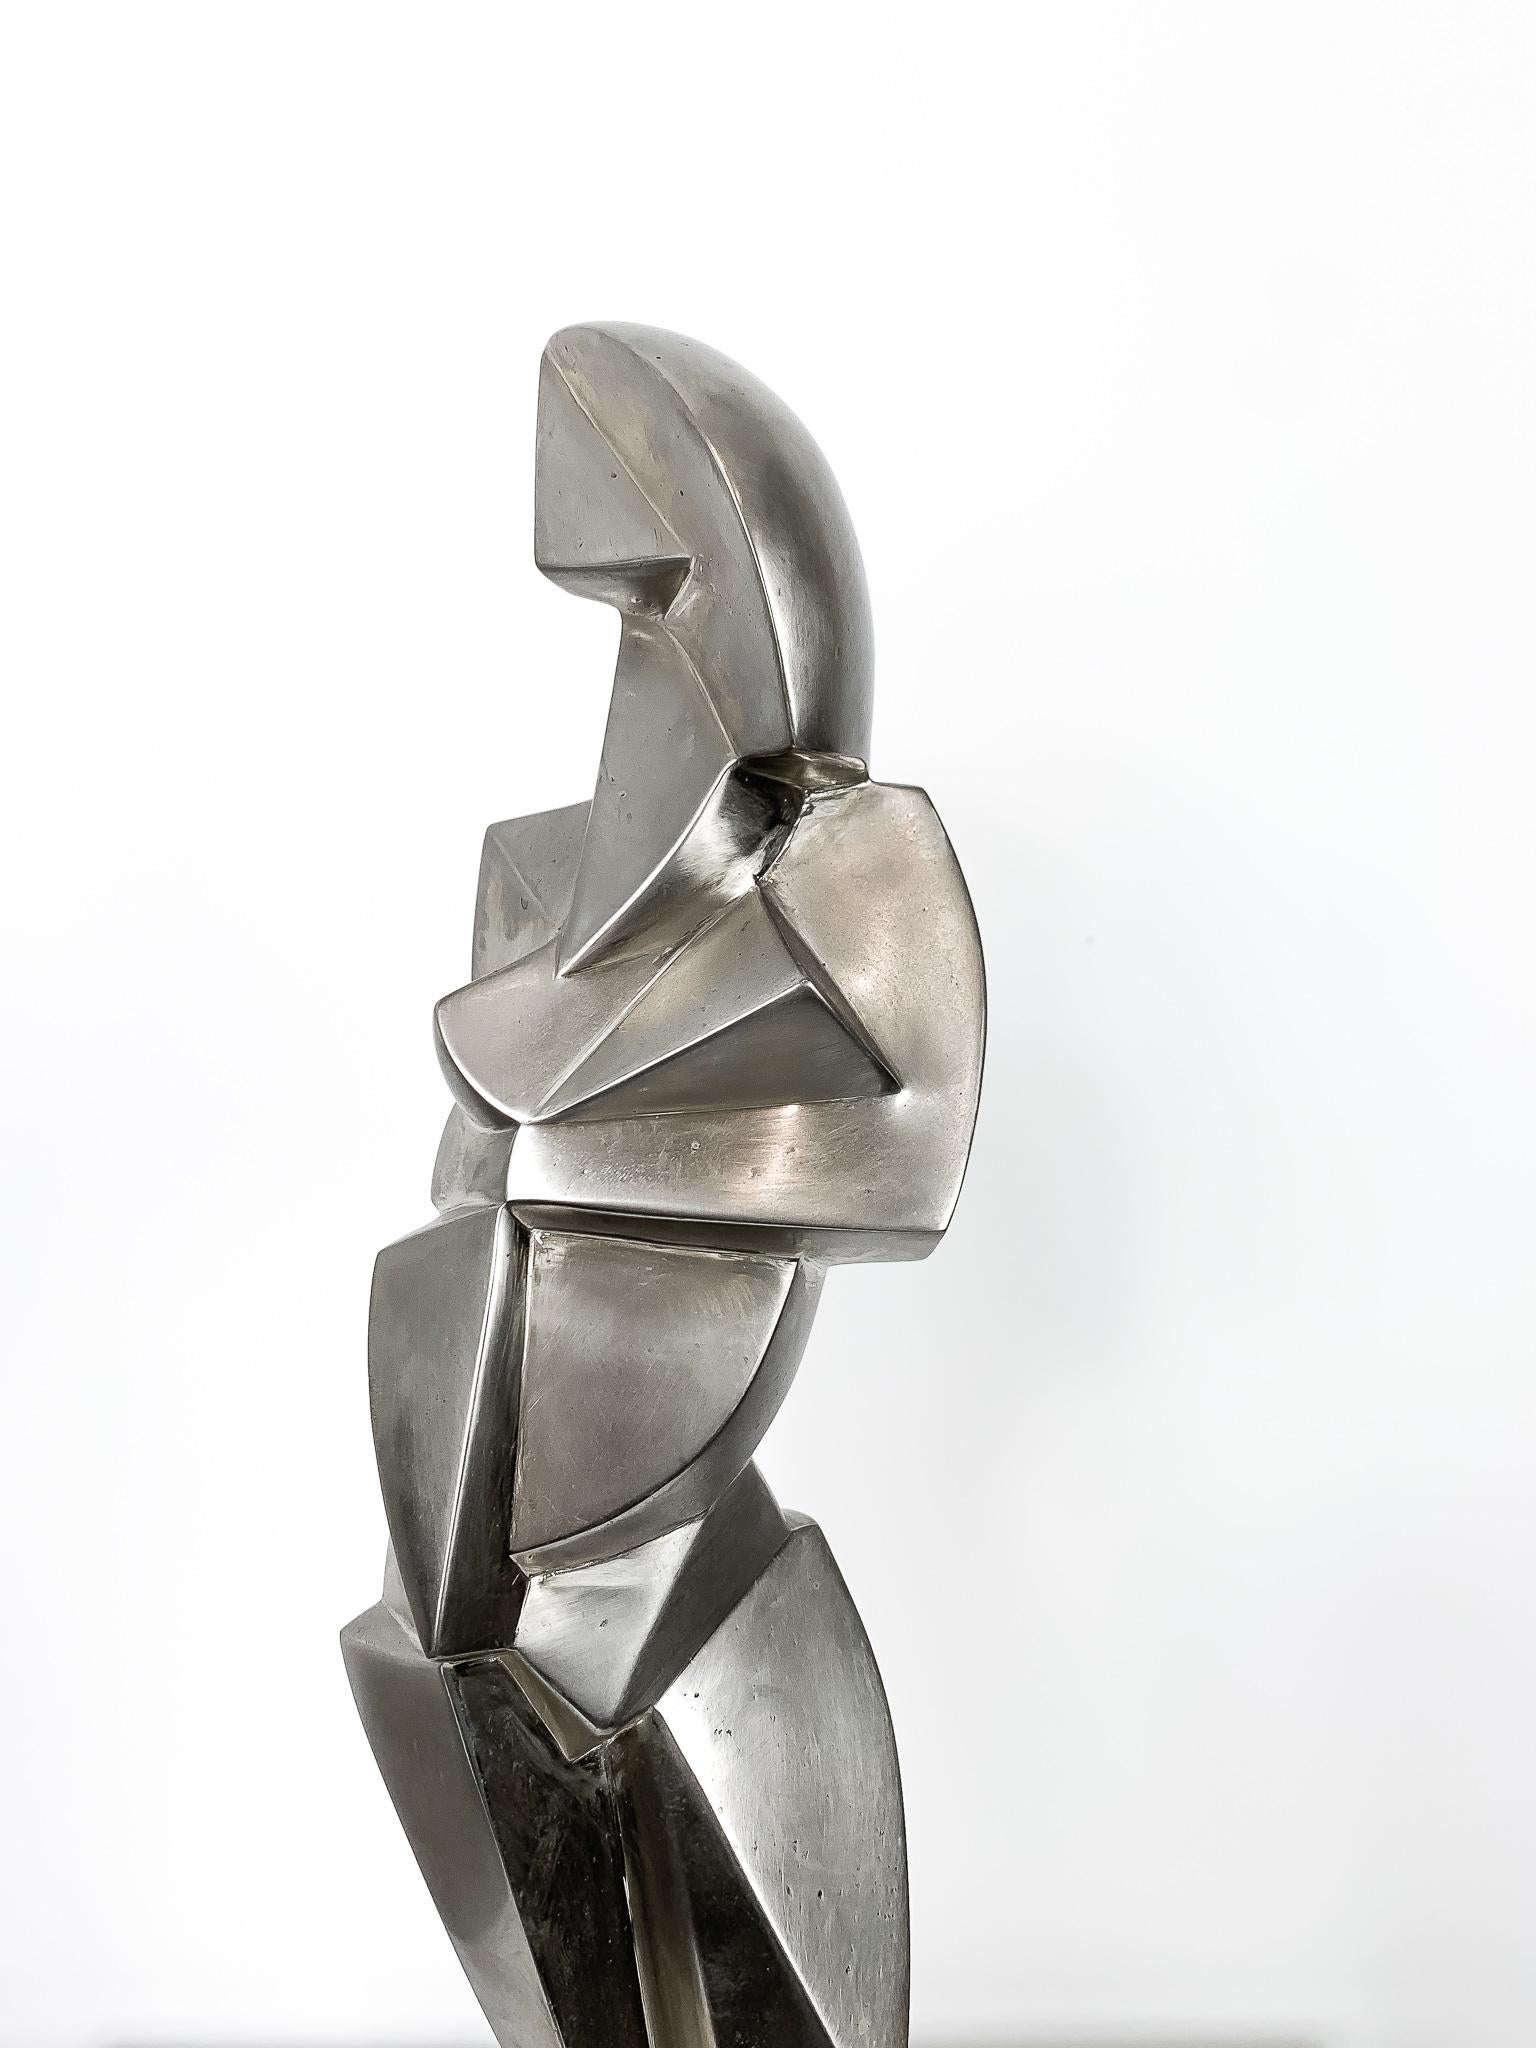 La Vençoise - Cubist Sculpture by Jim Ritchie